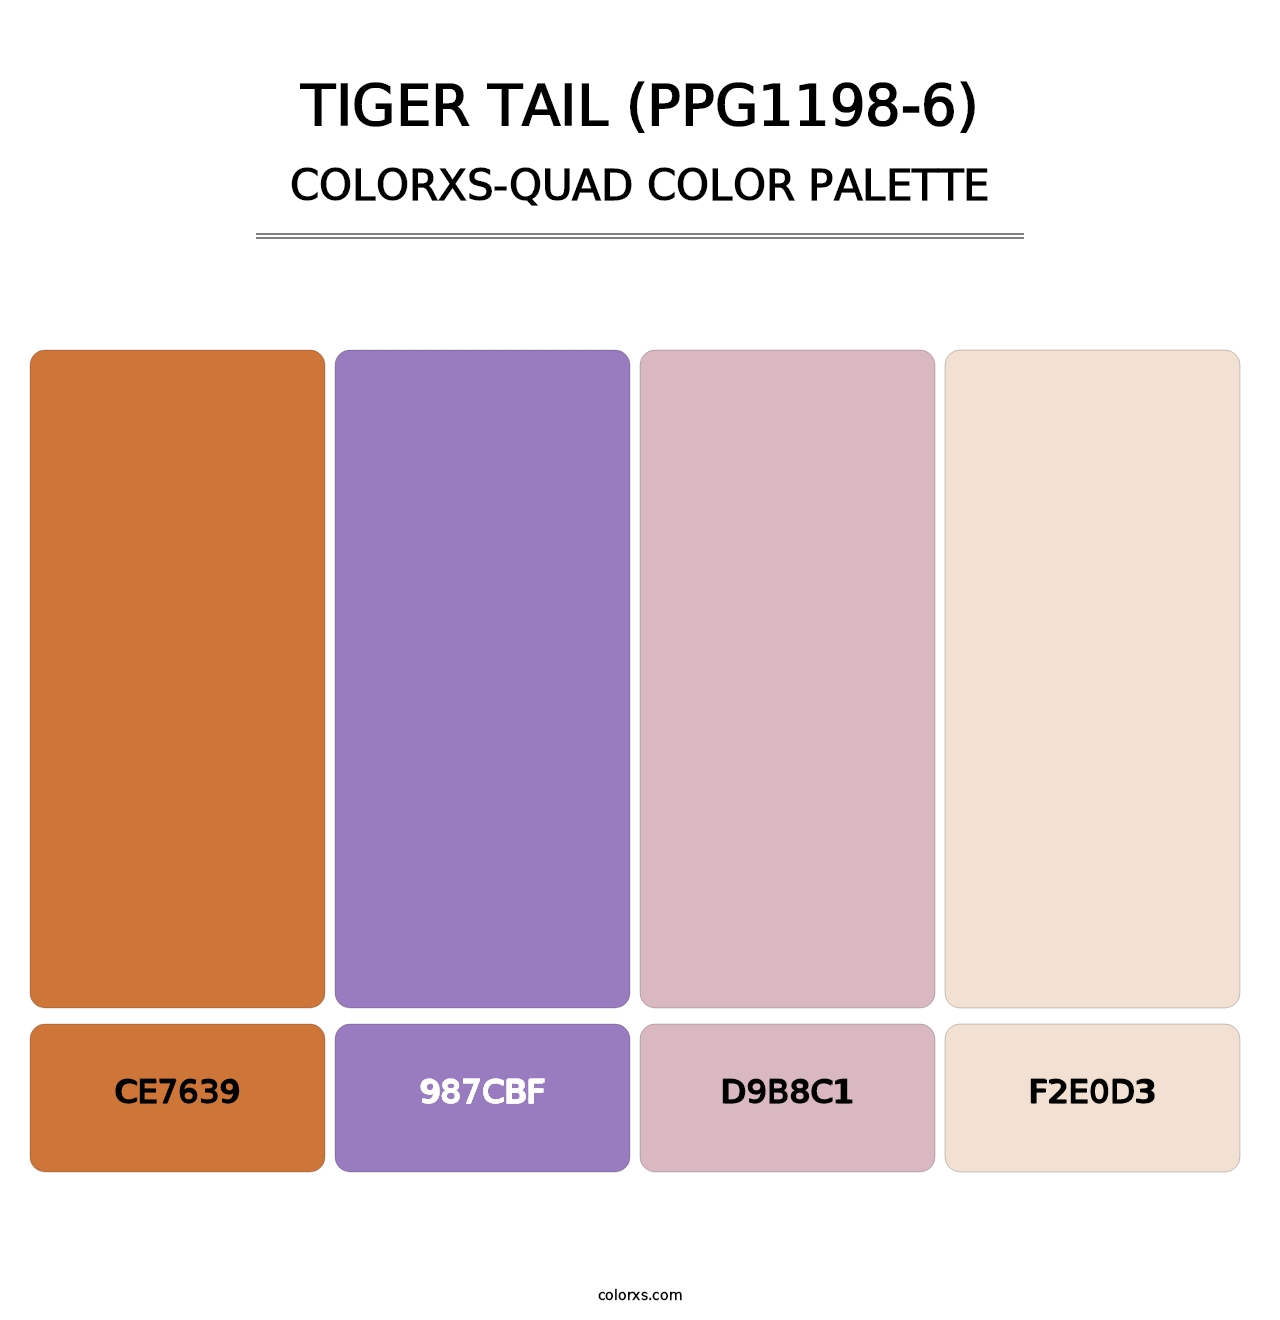 Tiger Tail (PPG1198-6) - Colorxs Quad Palette